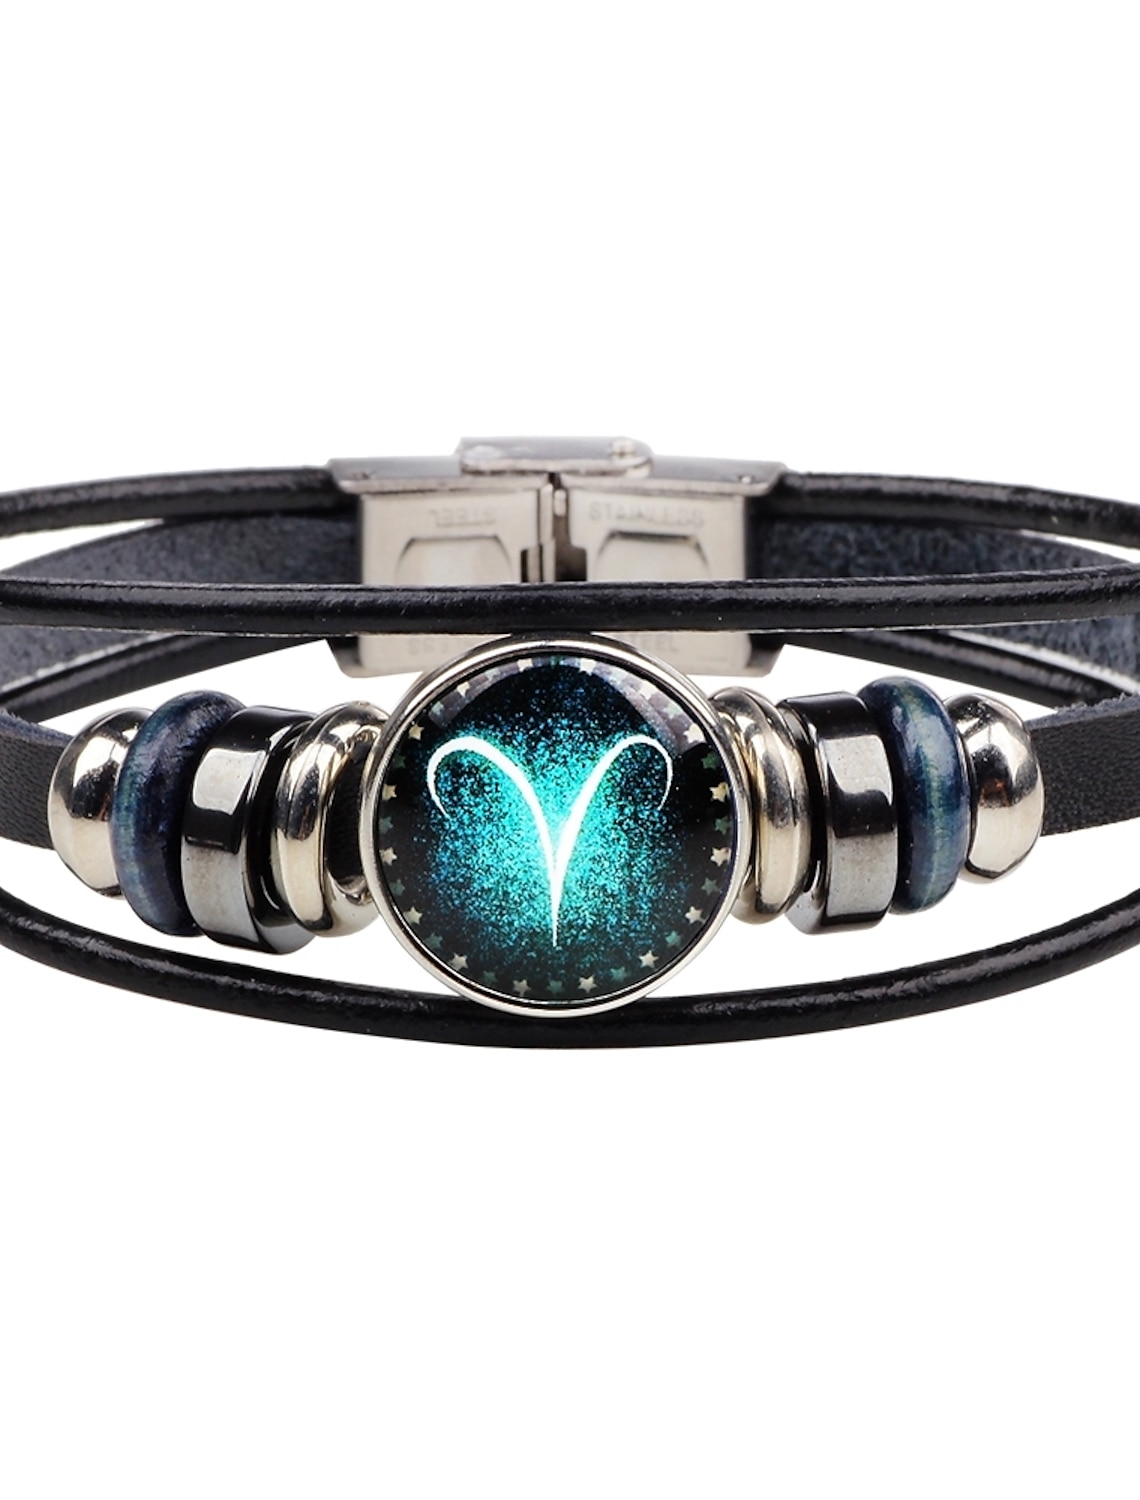 Design Armband Leder Strass Perlen Quaste Magnetarmband Grau oder Schwarz NEU